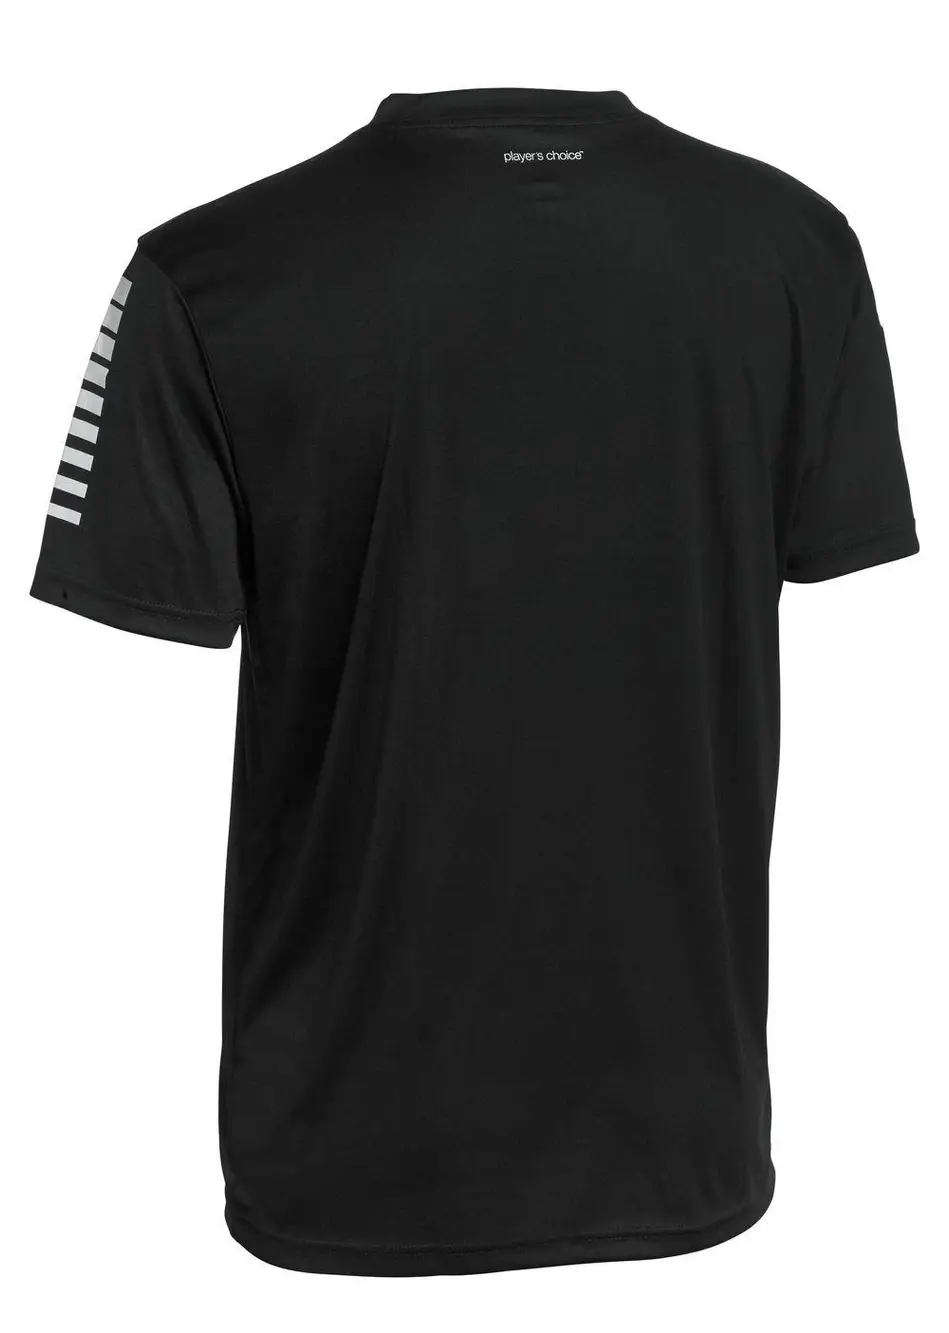 Футболка SELECT Pisa player shirt  чорний, 6 років фото товару